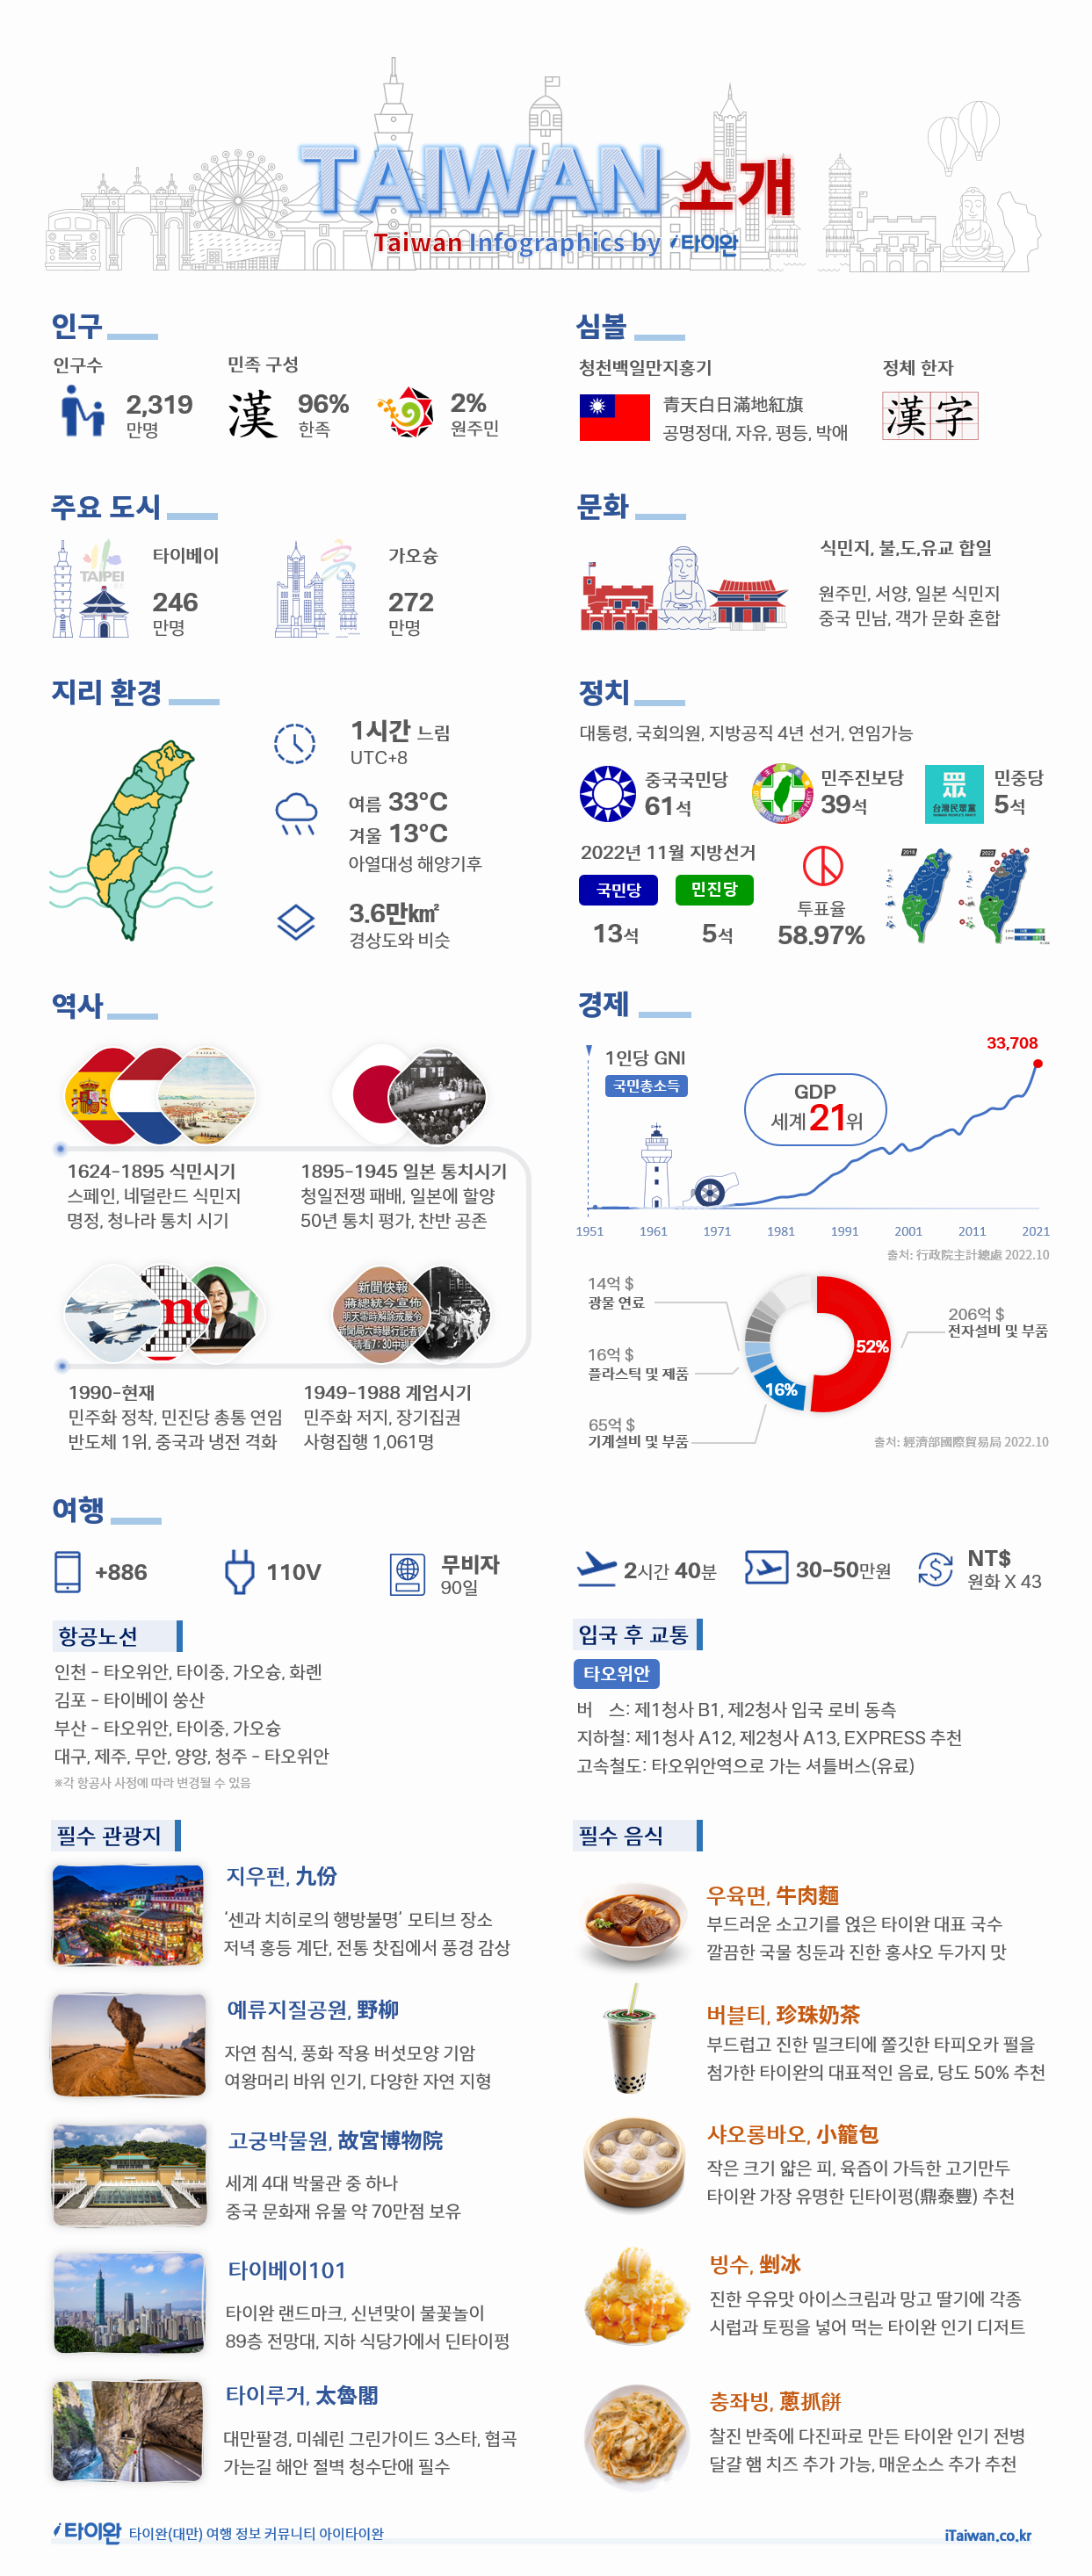 타이완(대만) 소개 정보 인포그래픽